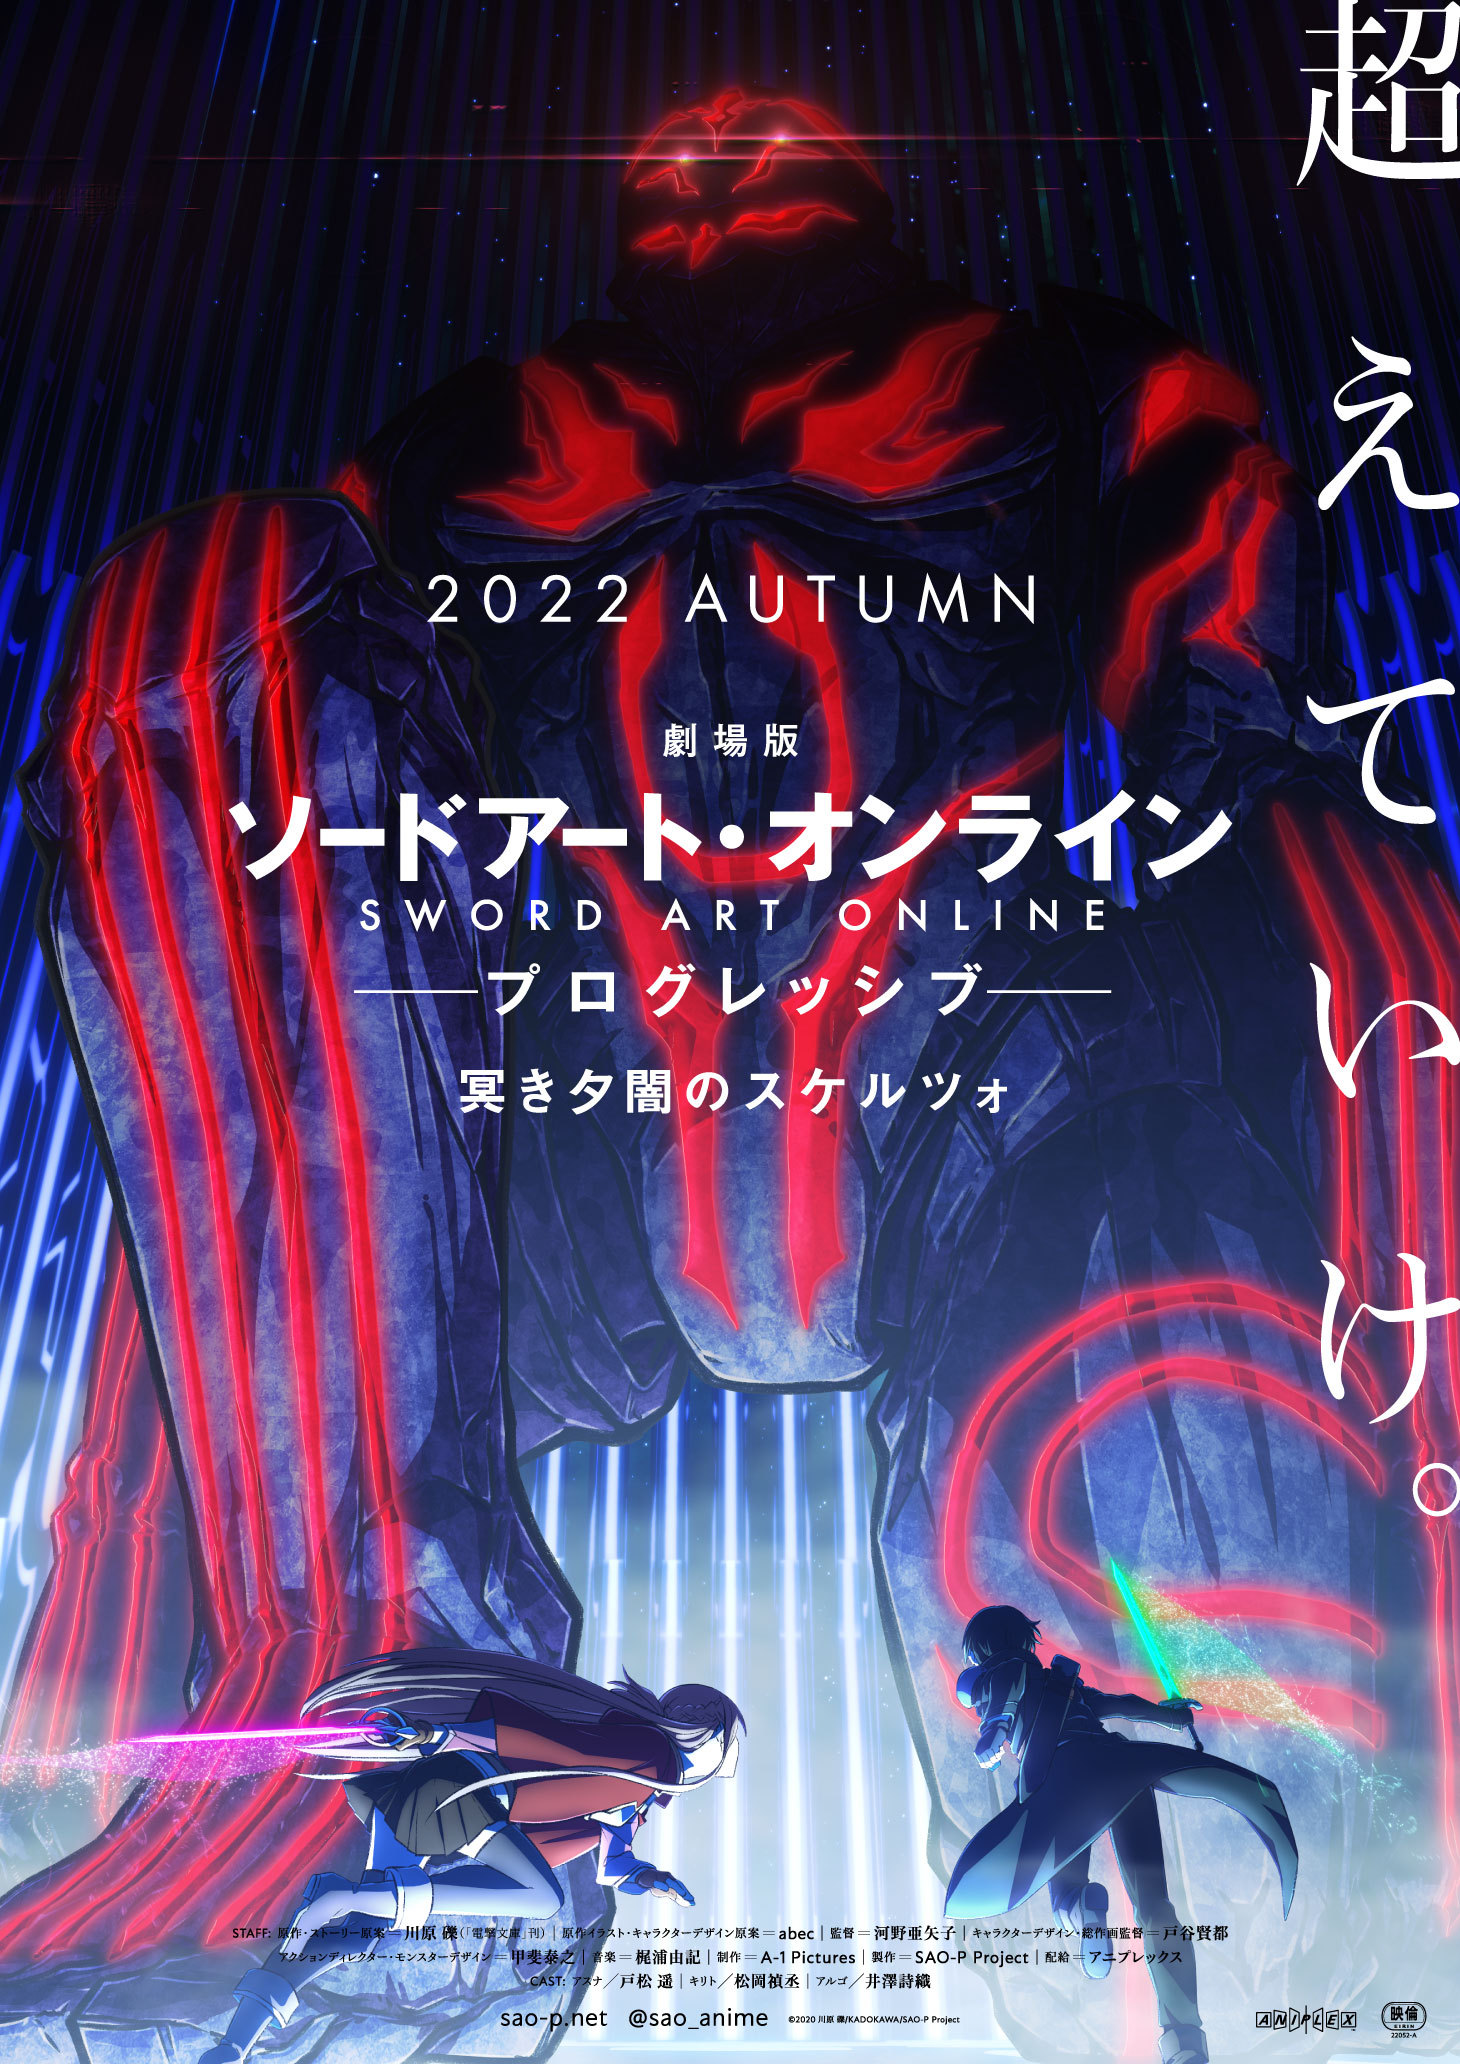 《刀剑神域剧场版 -进击篇- 黯淡黄昏的谐谑曲》将于2022年秋季上映-N5次元